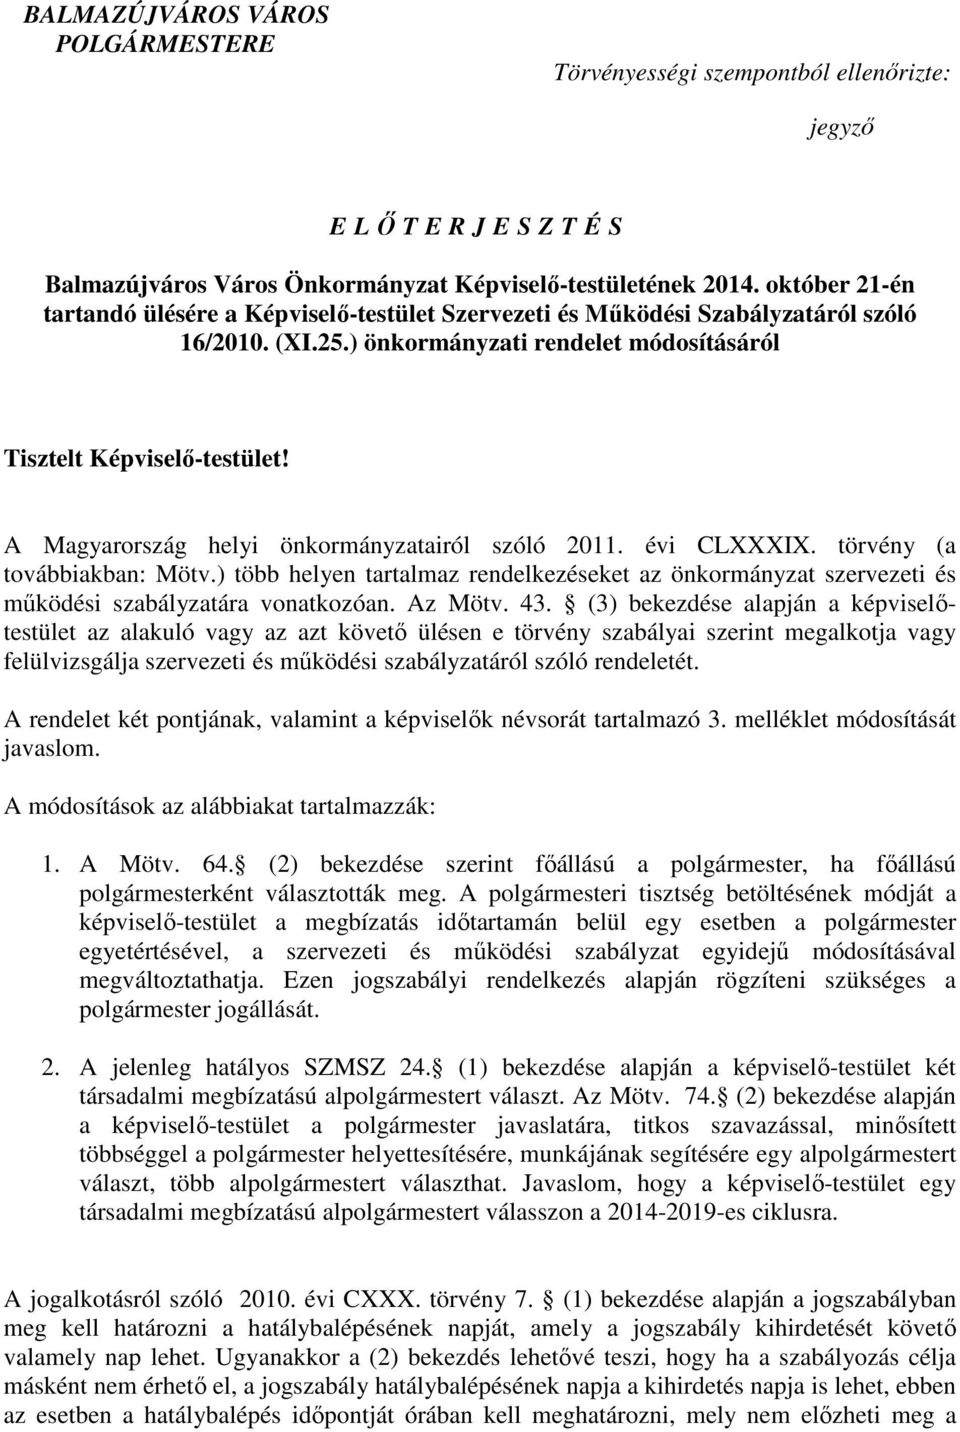 A Magyarország helyi önkormányzatairól szóló 2011. évi CLXXXIX. törvény (a továbbiakban: Mötv.) több helyen tartalmaz rendelkezéseket az önkormányzat szervezeti és mőködési szabályzatára vonatkozóan.